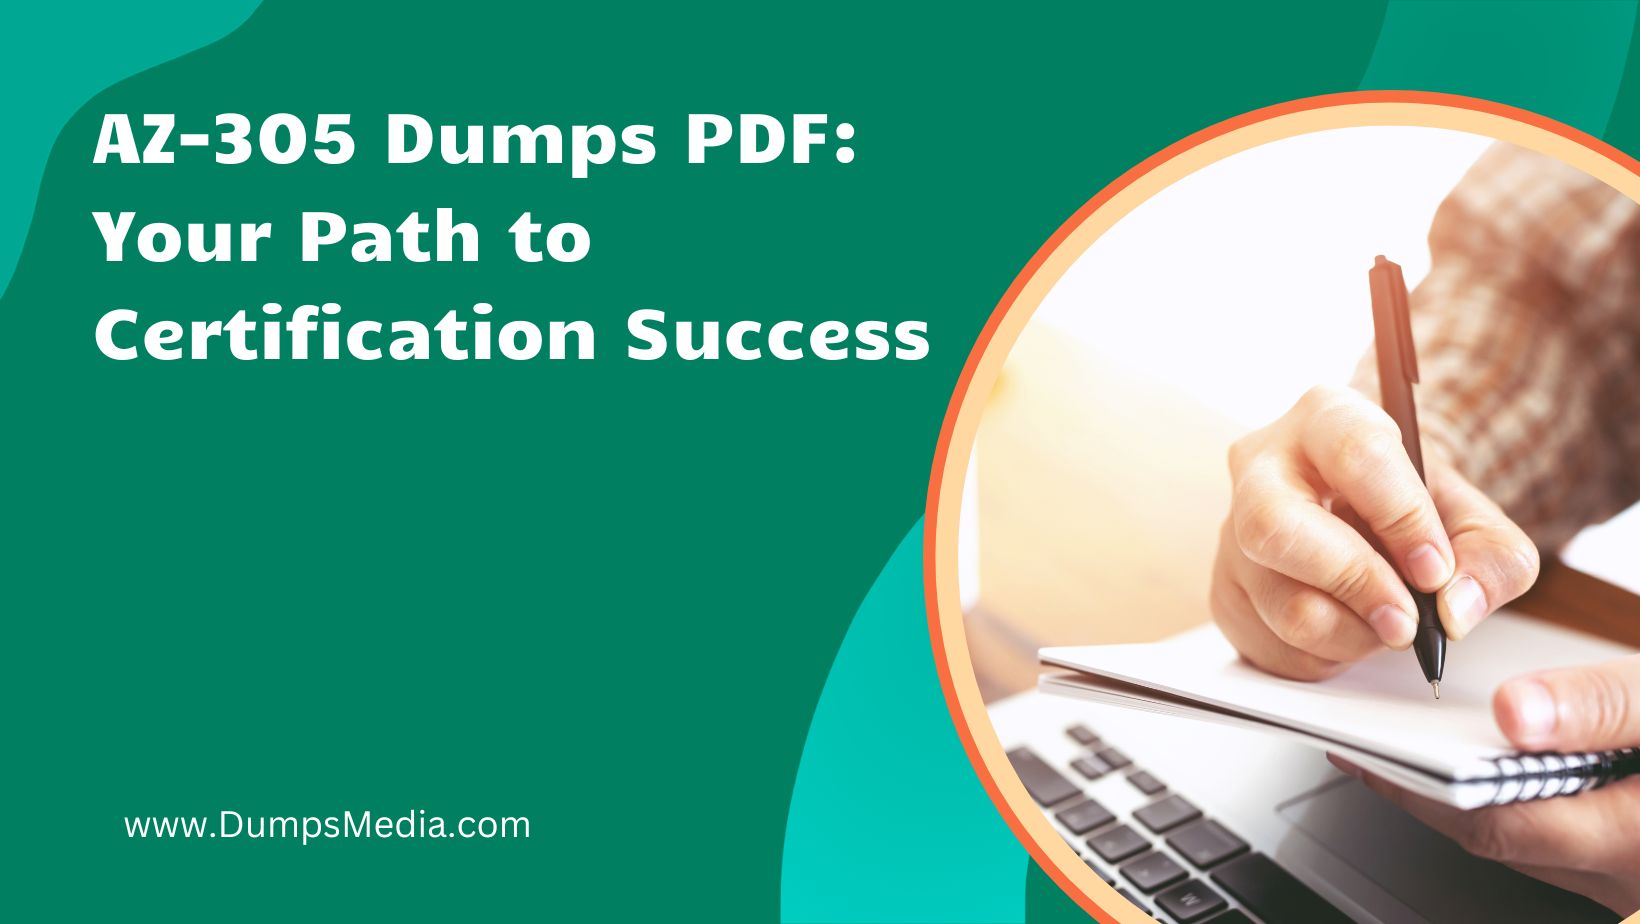 AZ-305 Dumps PDF: Your Path to Certification Success